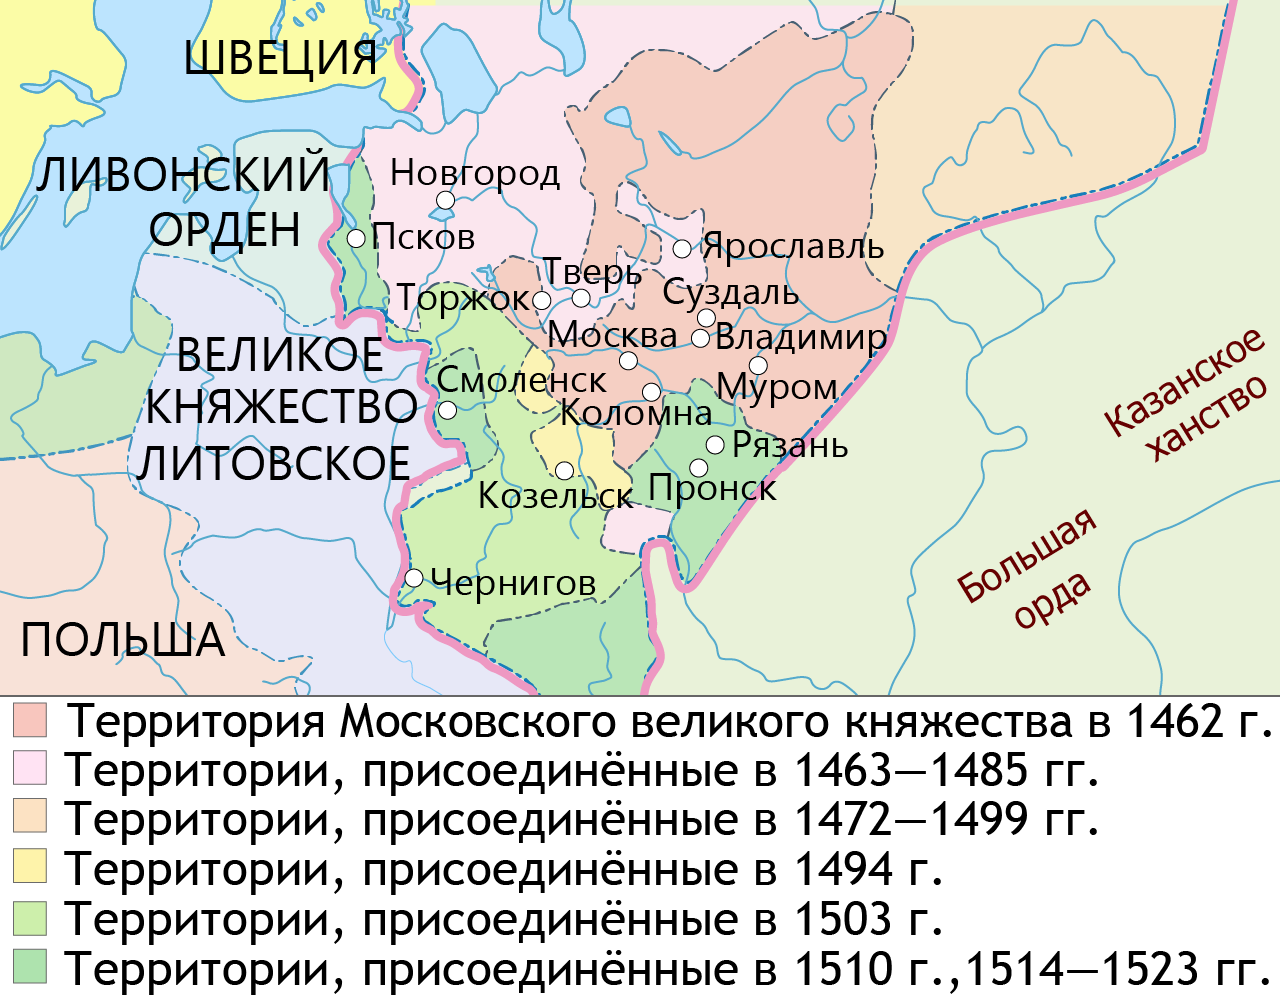 Объединение русских земель вокруг москвы даты